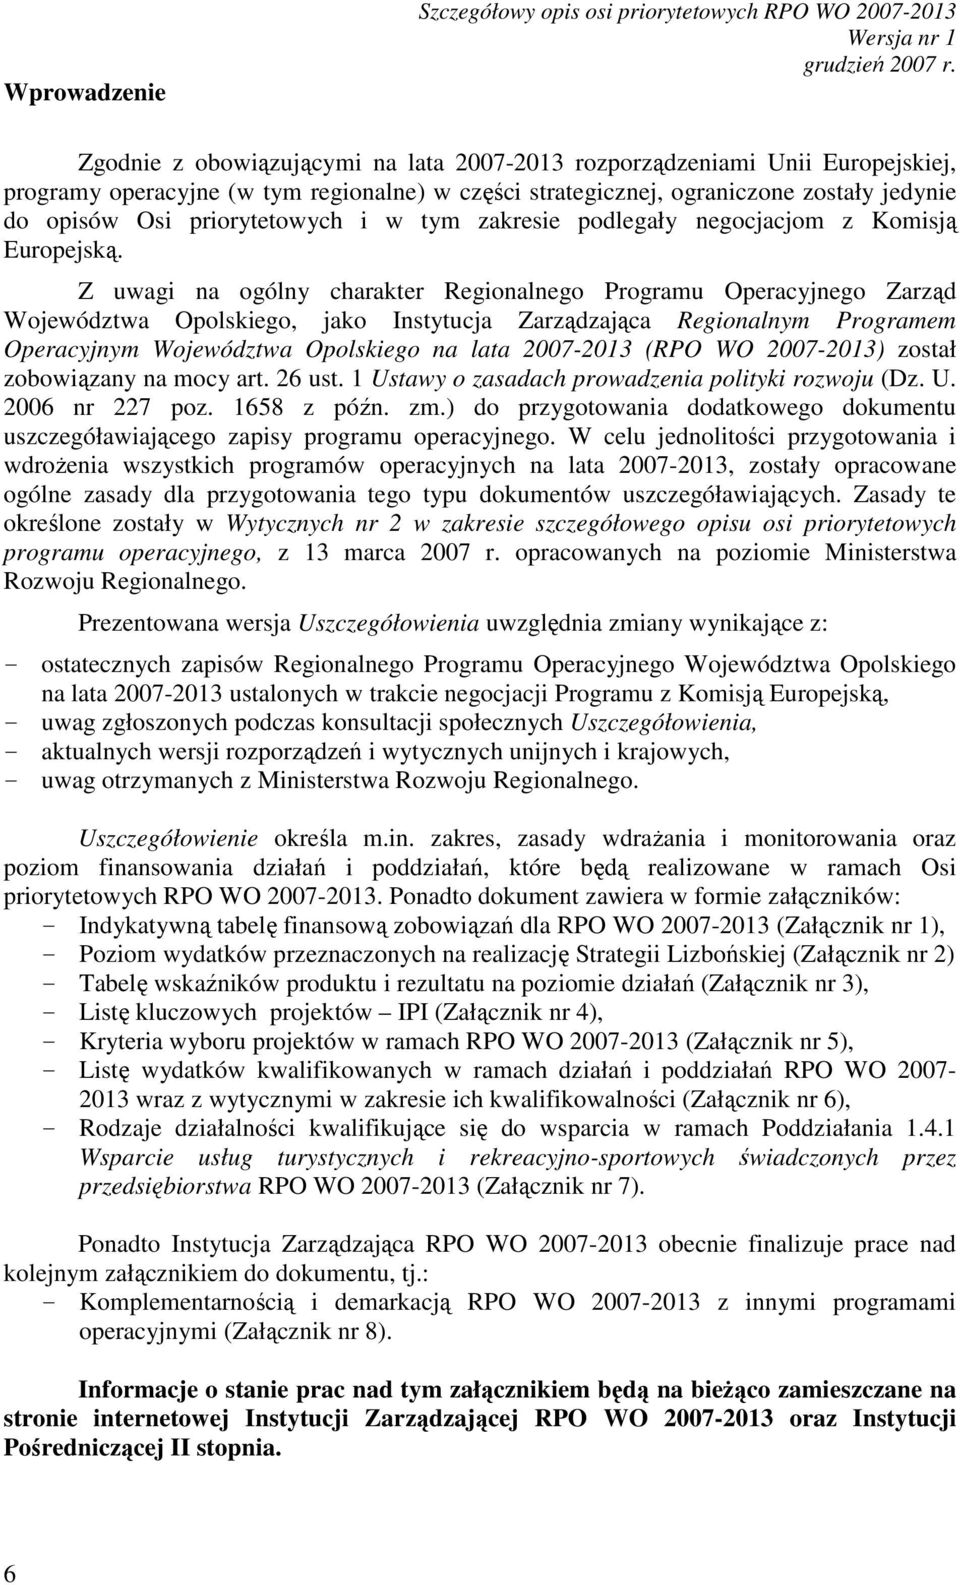 Z uwagi na ogólny charakter Regionalnego Programu Operacyjnego Zarząd Województwa Opolskiego, jako Instytucja Zarządzająca Regionalnym Programem Operacyjnym Województwa Opolskiego na lata 2007-2013